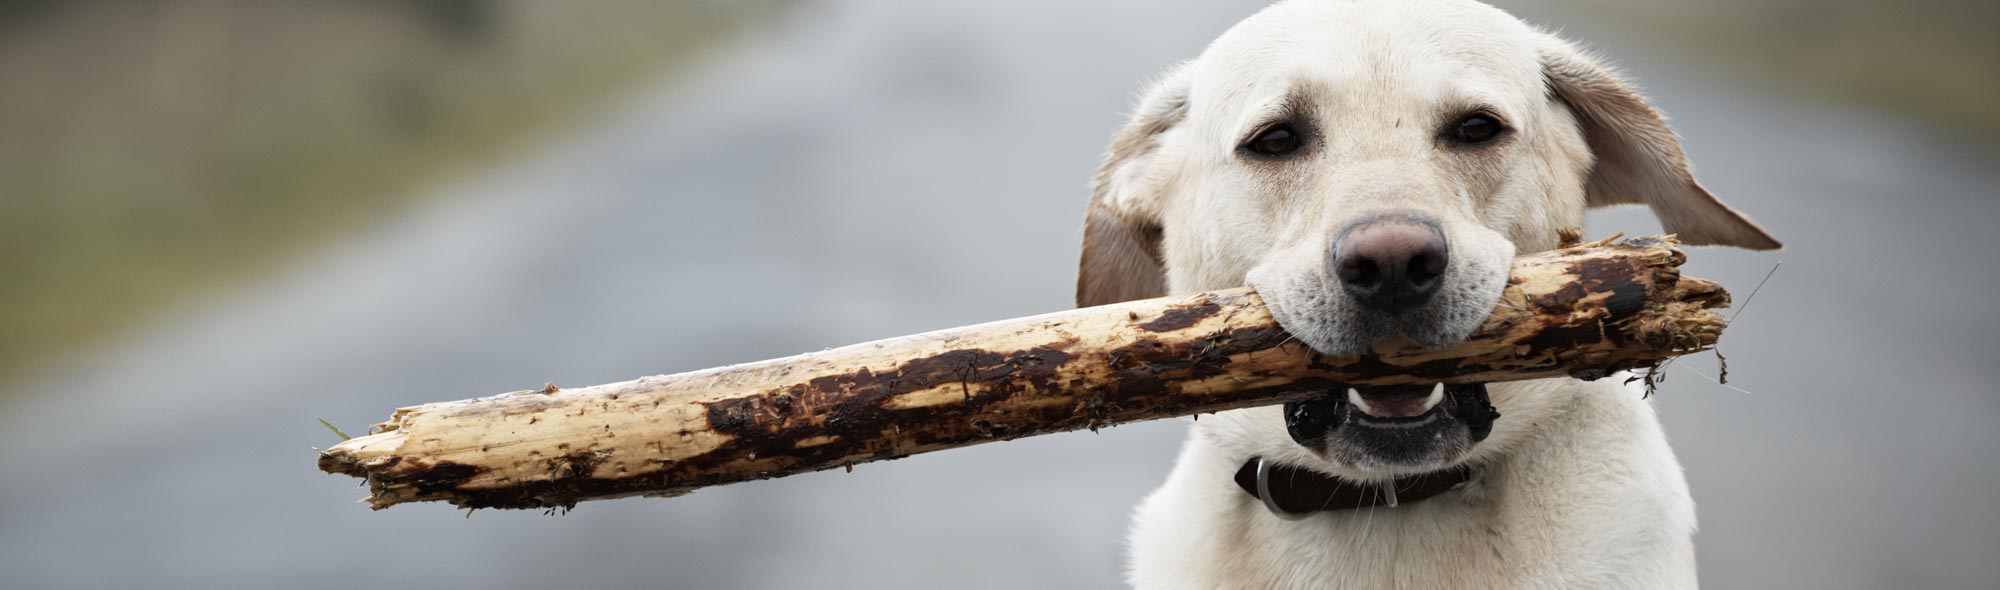 Labrador retriever with stick